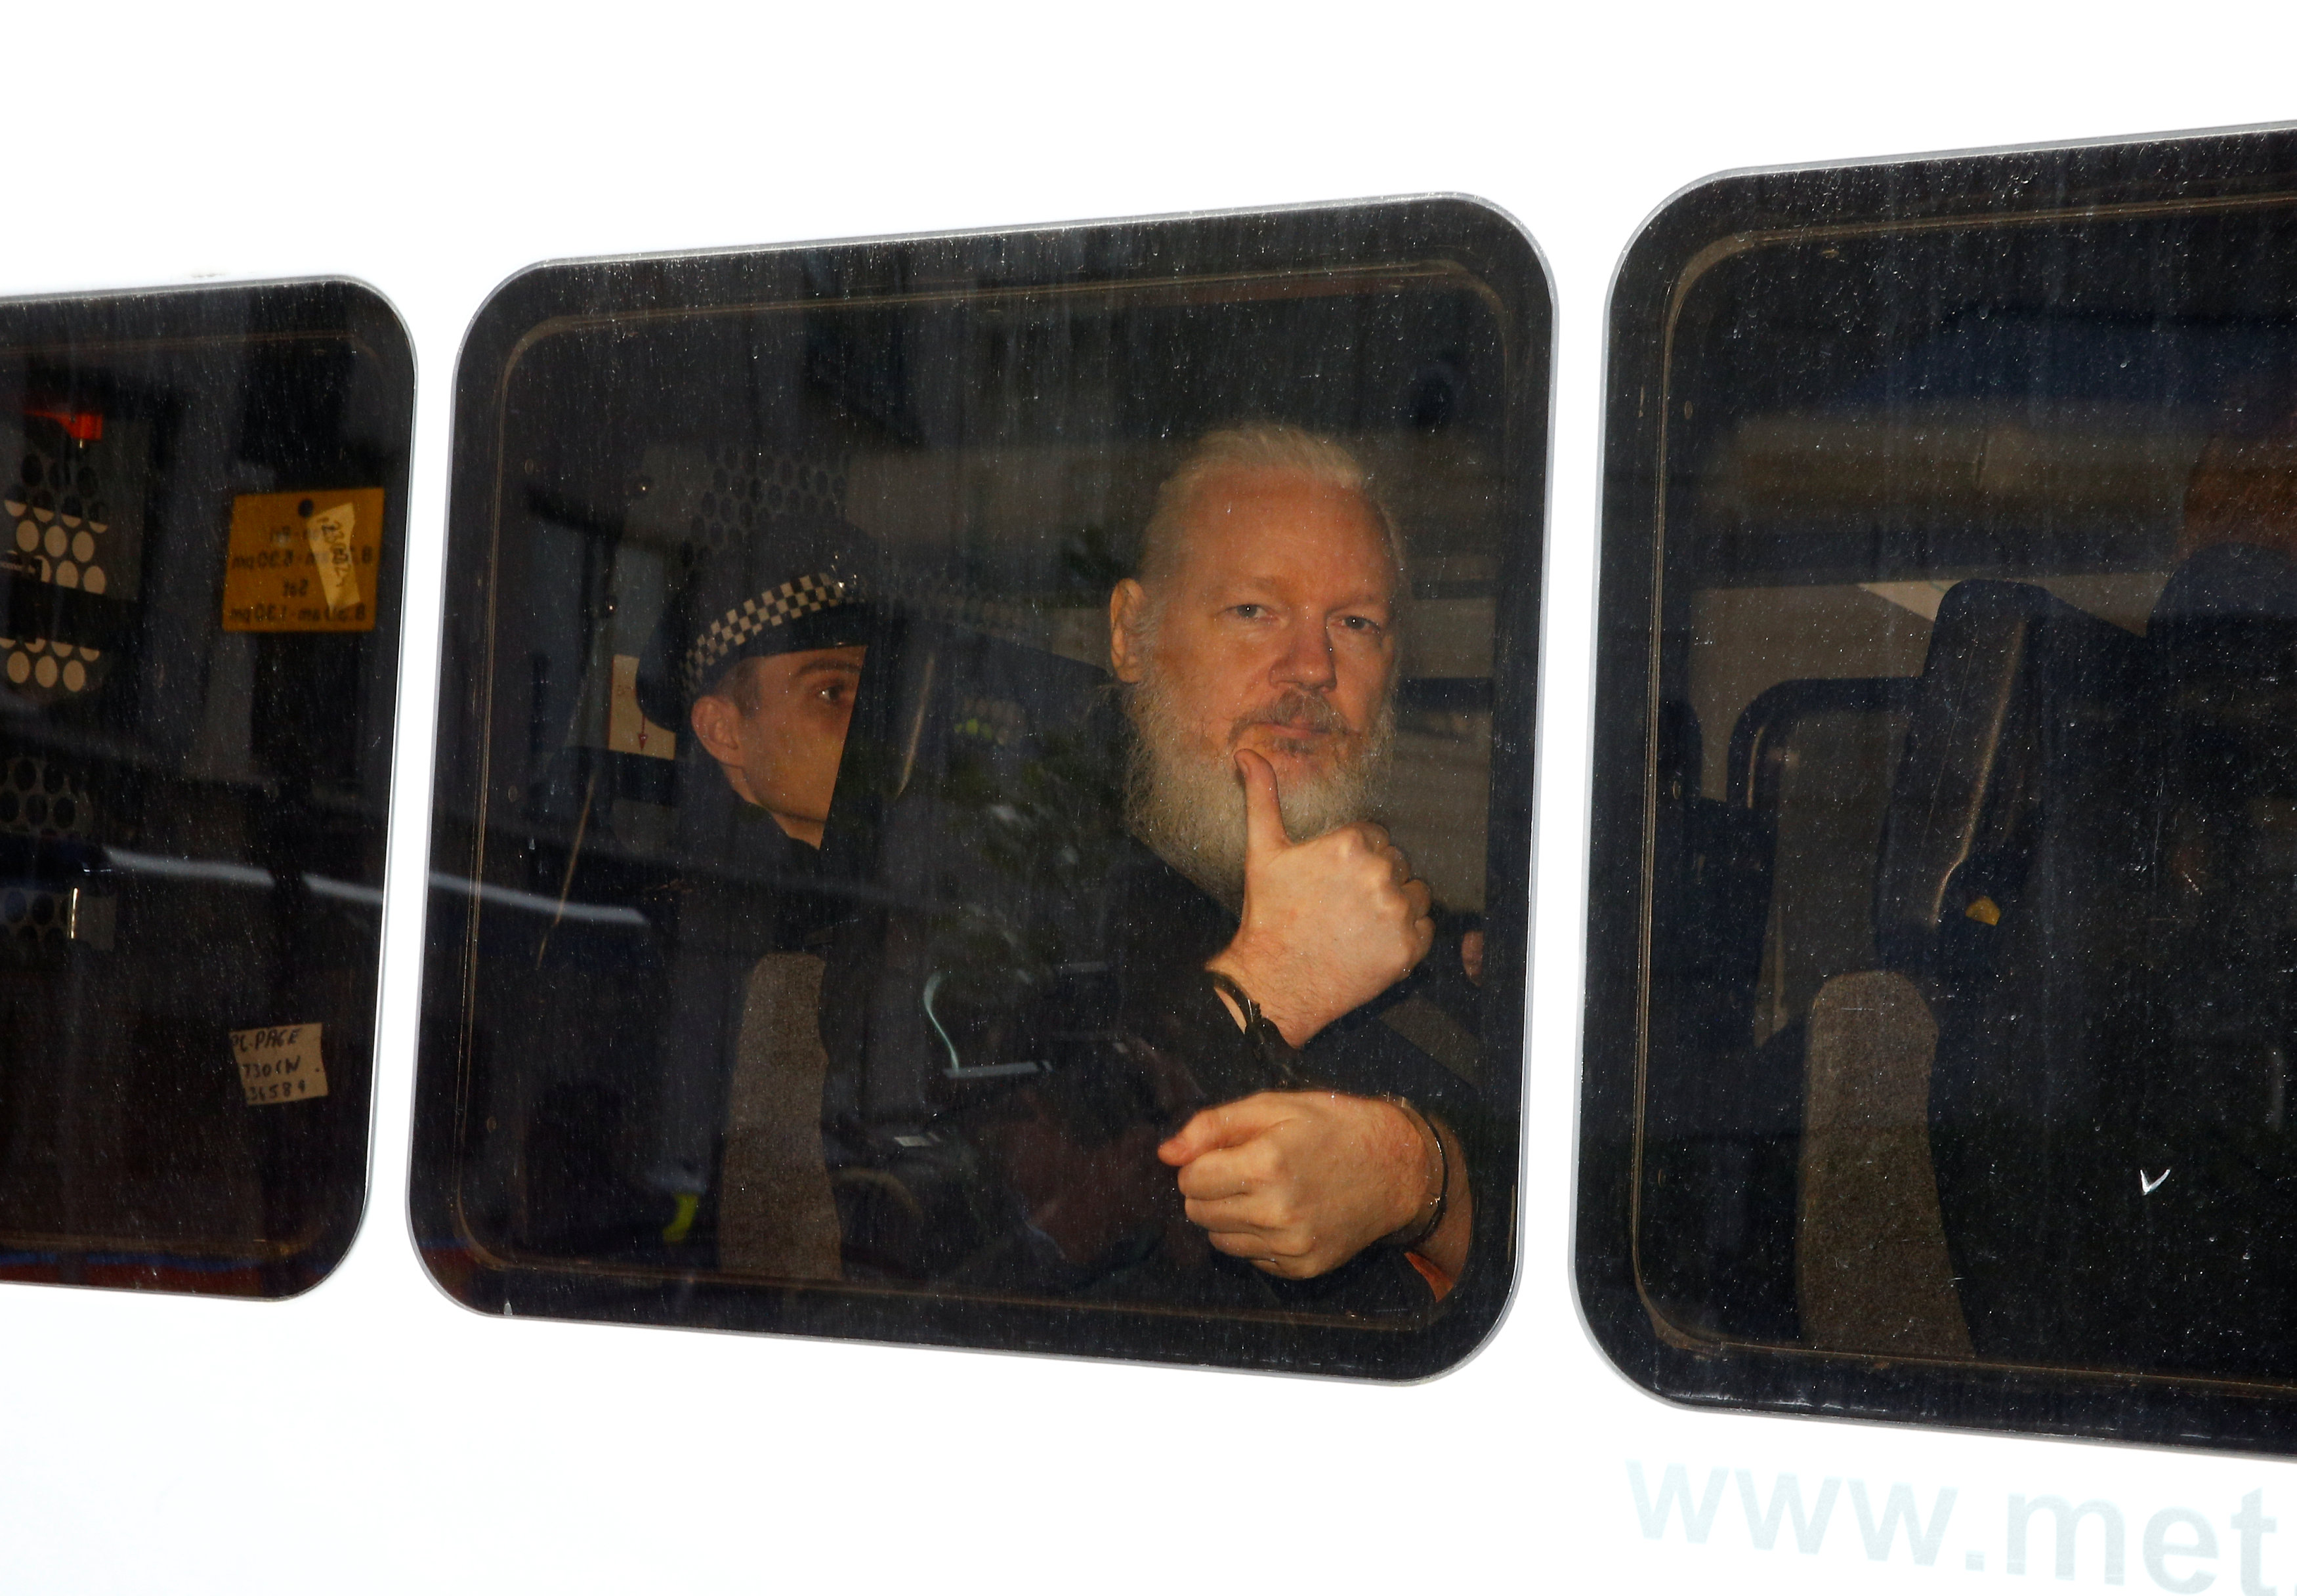 Julian Assange comparece ante un tribunal de Londres